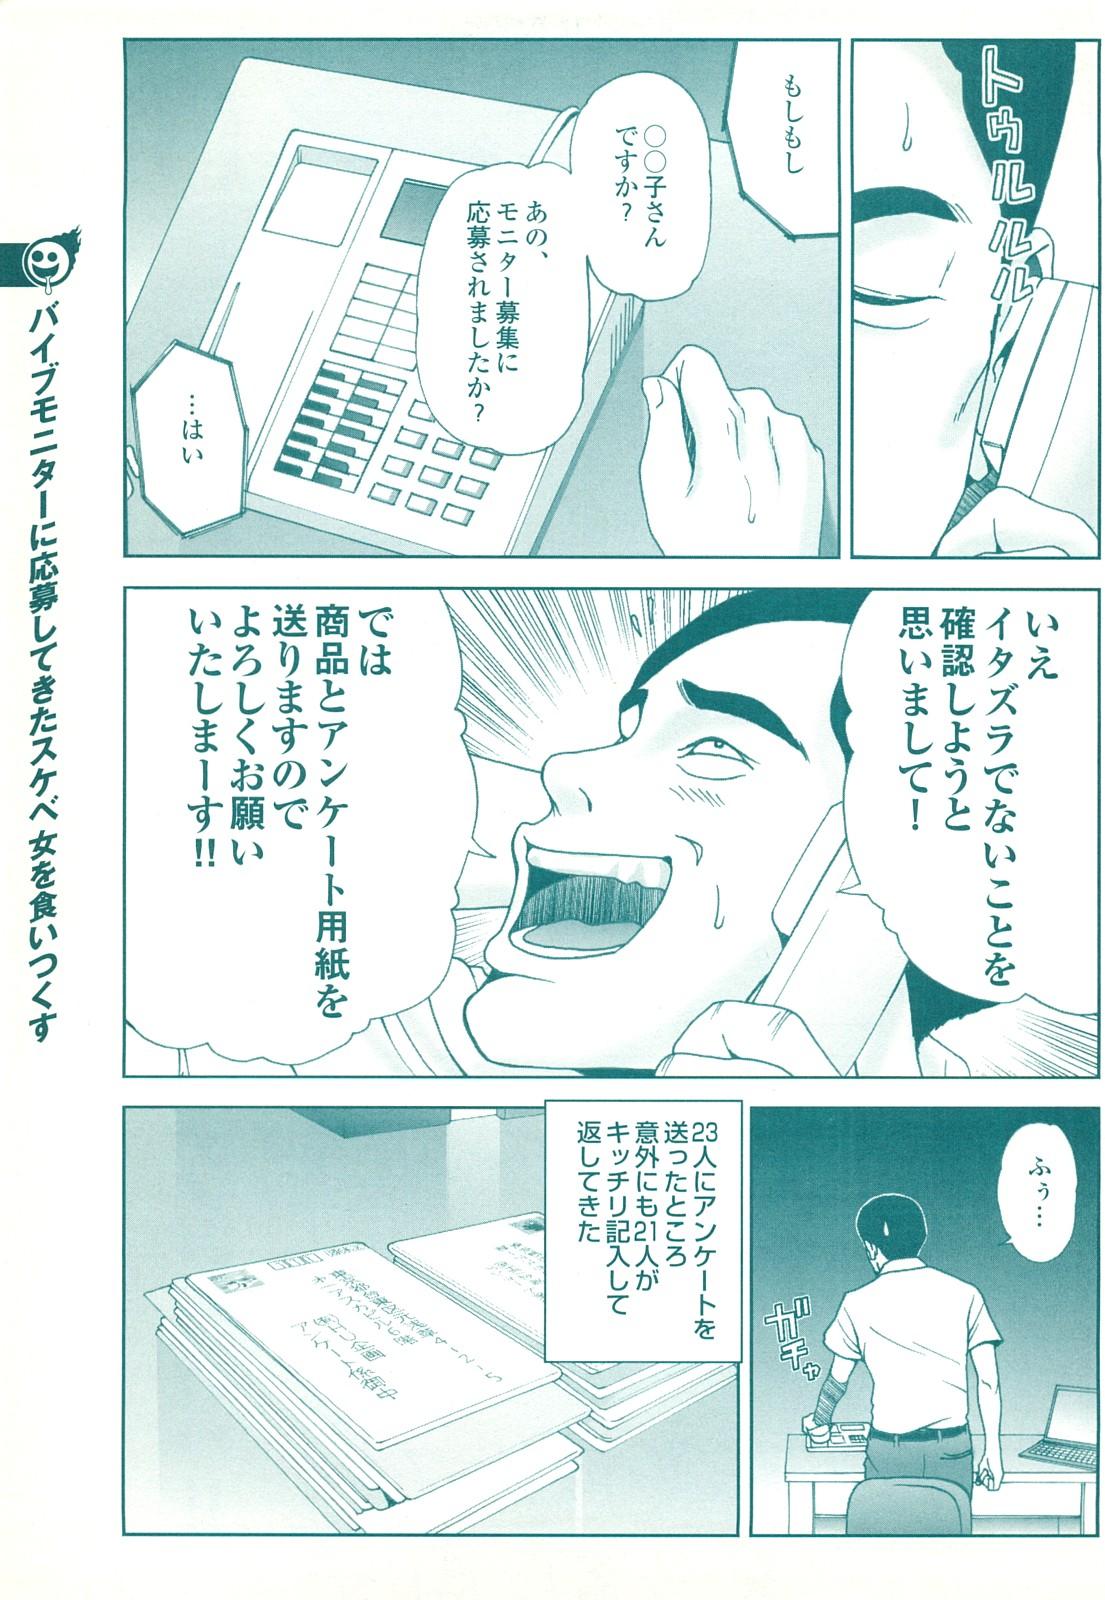 コミック裏モノJAPAN Vol.18 今井のりたつスペシャル号 166